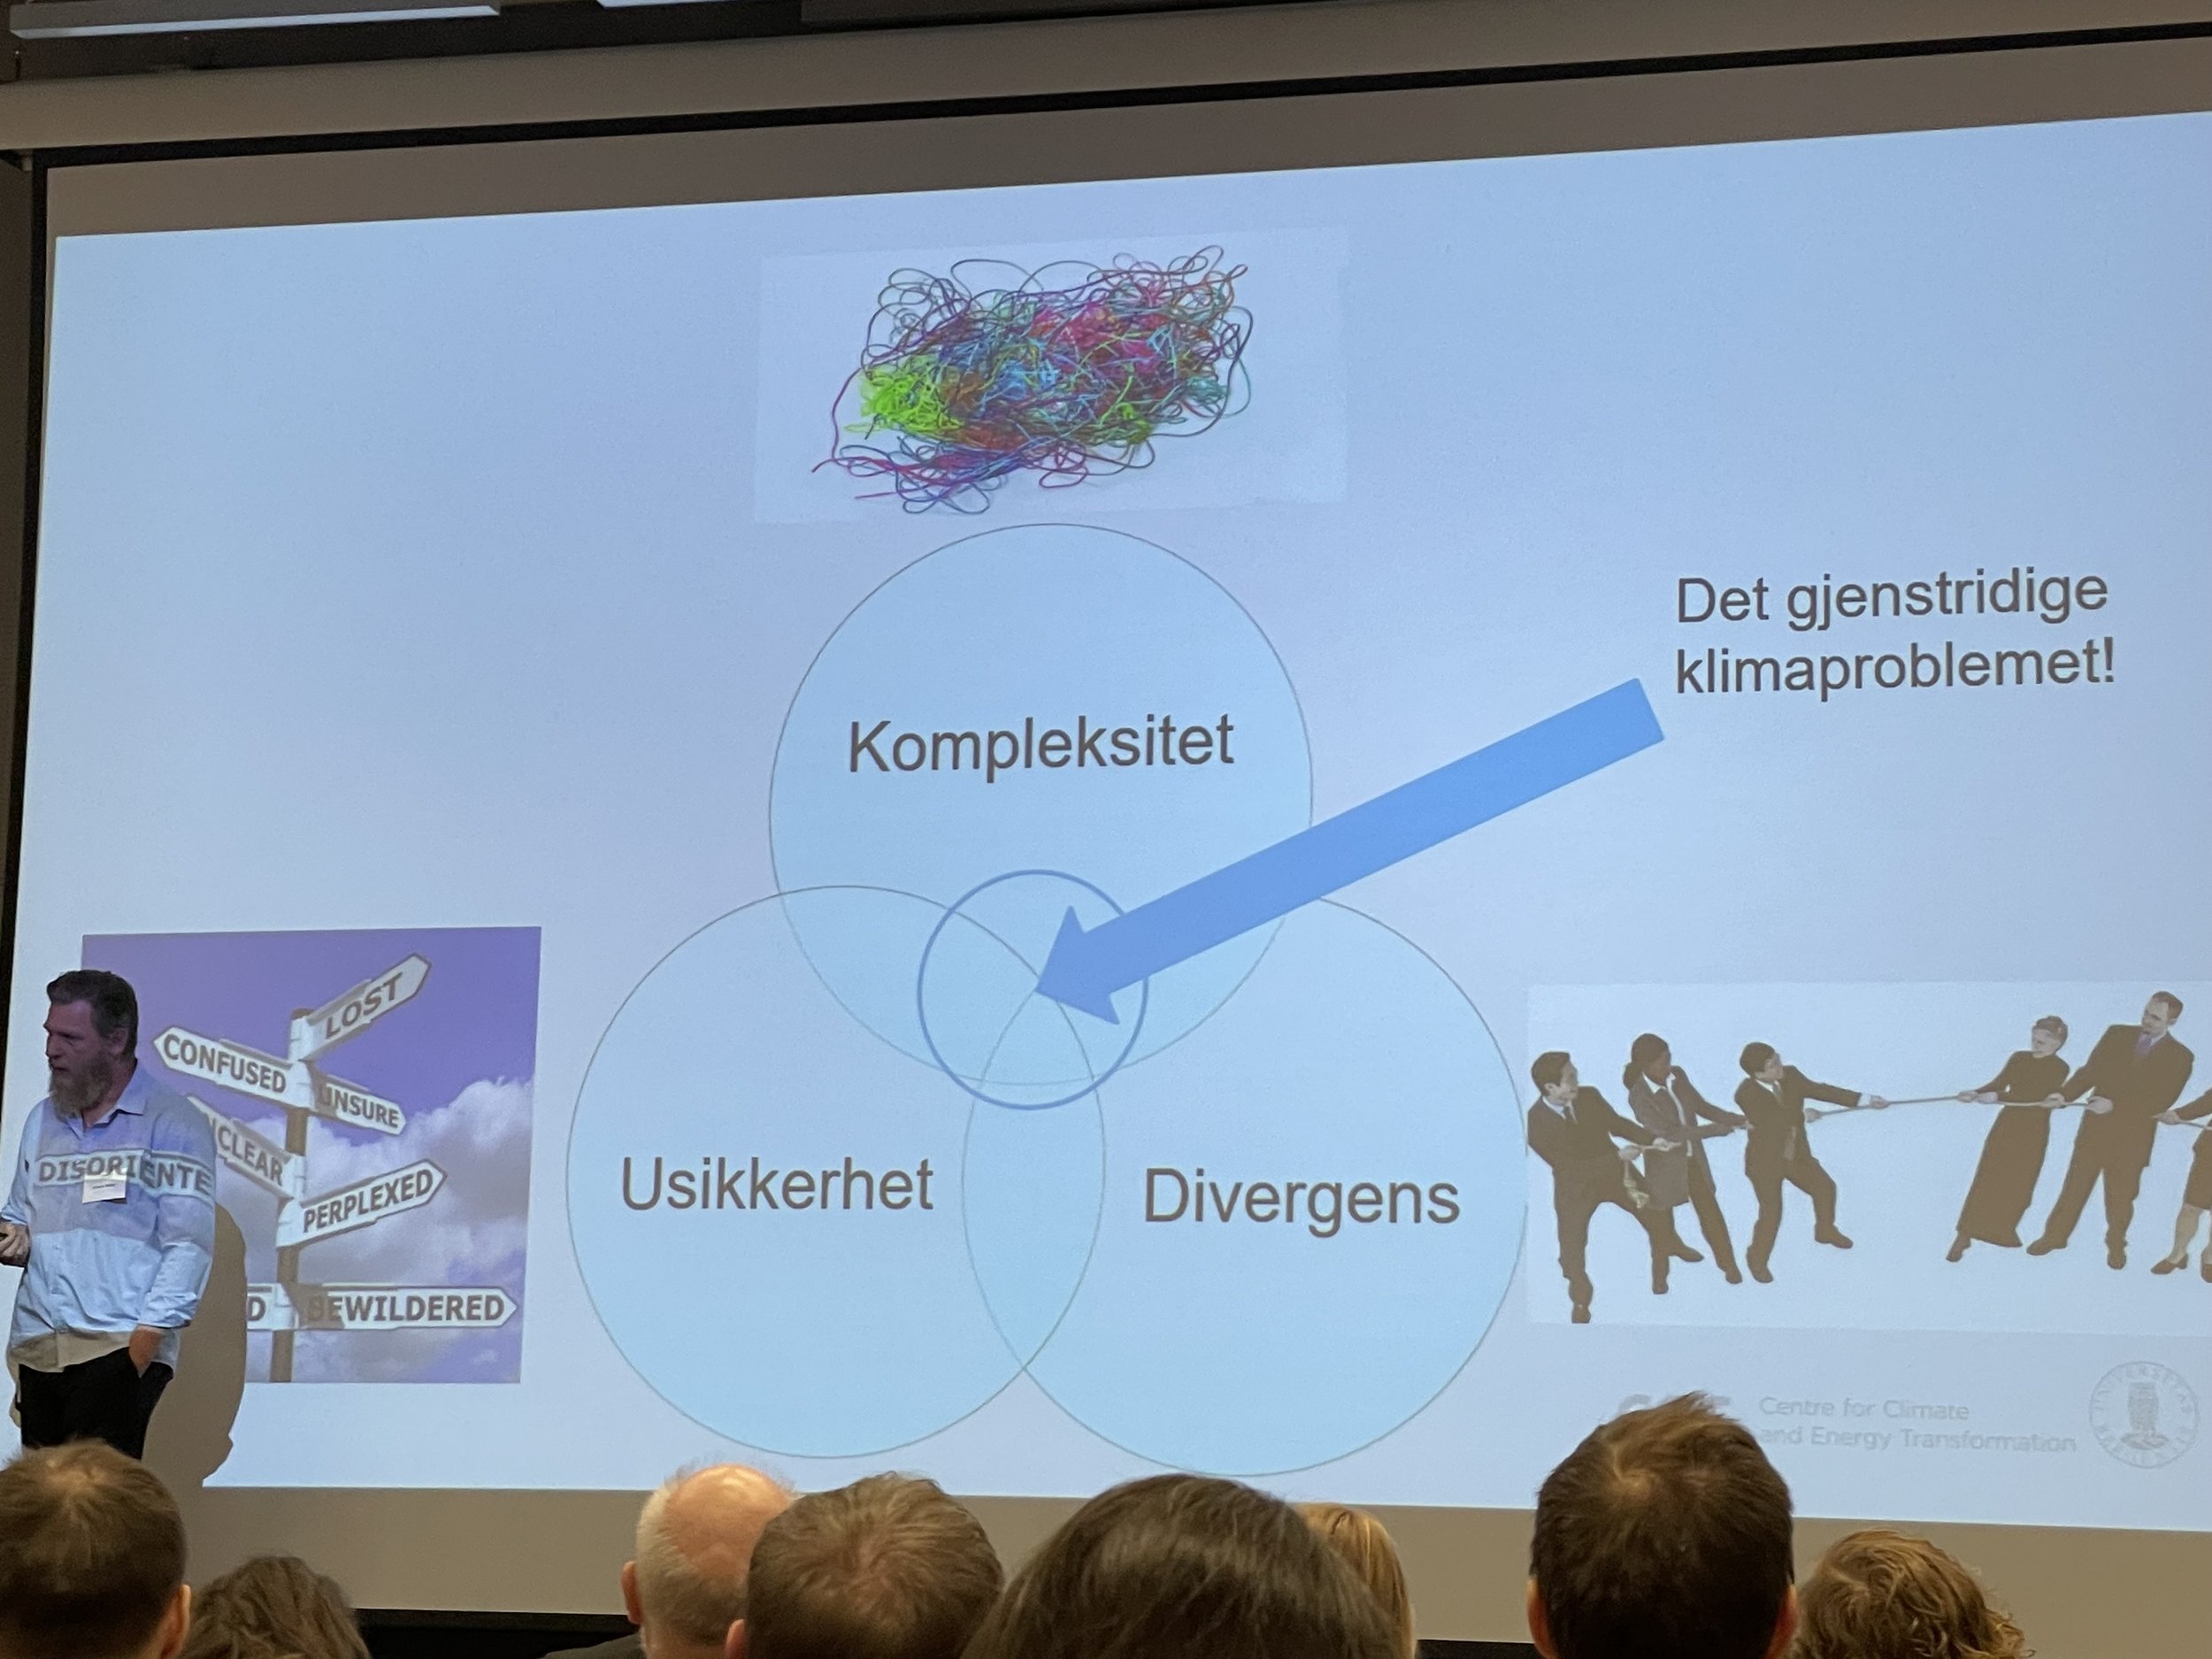  Professor Simon Neby frå Universitetet i Bergen forklarte kvifor klimaproblemet ofte blir skildra som spesielt gjenstridig eller flokete. (foto: Idun A. Husabø) 